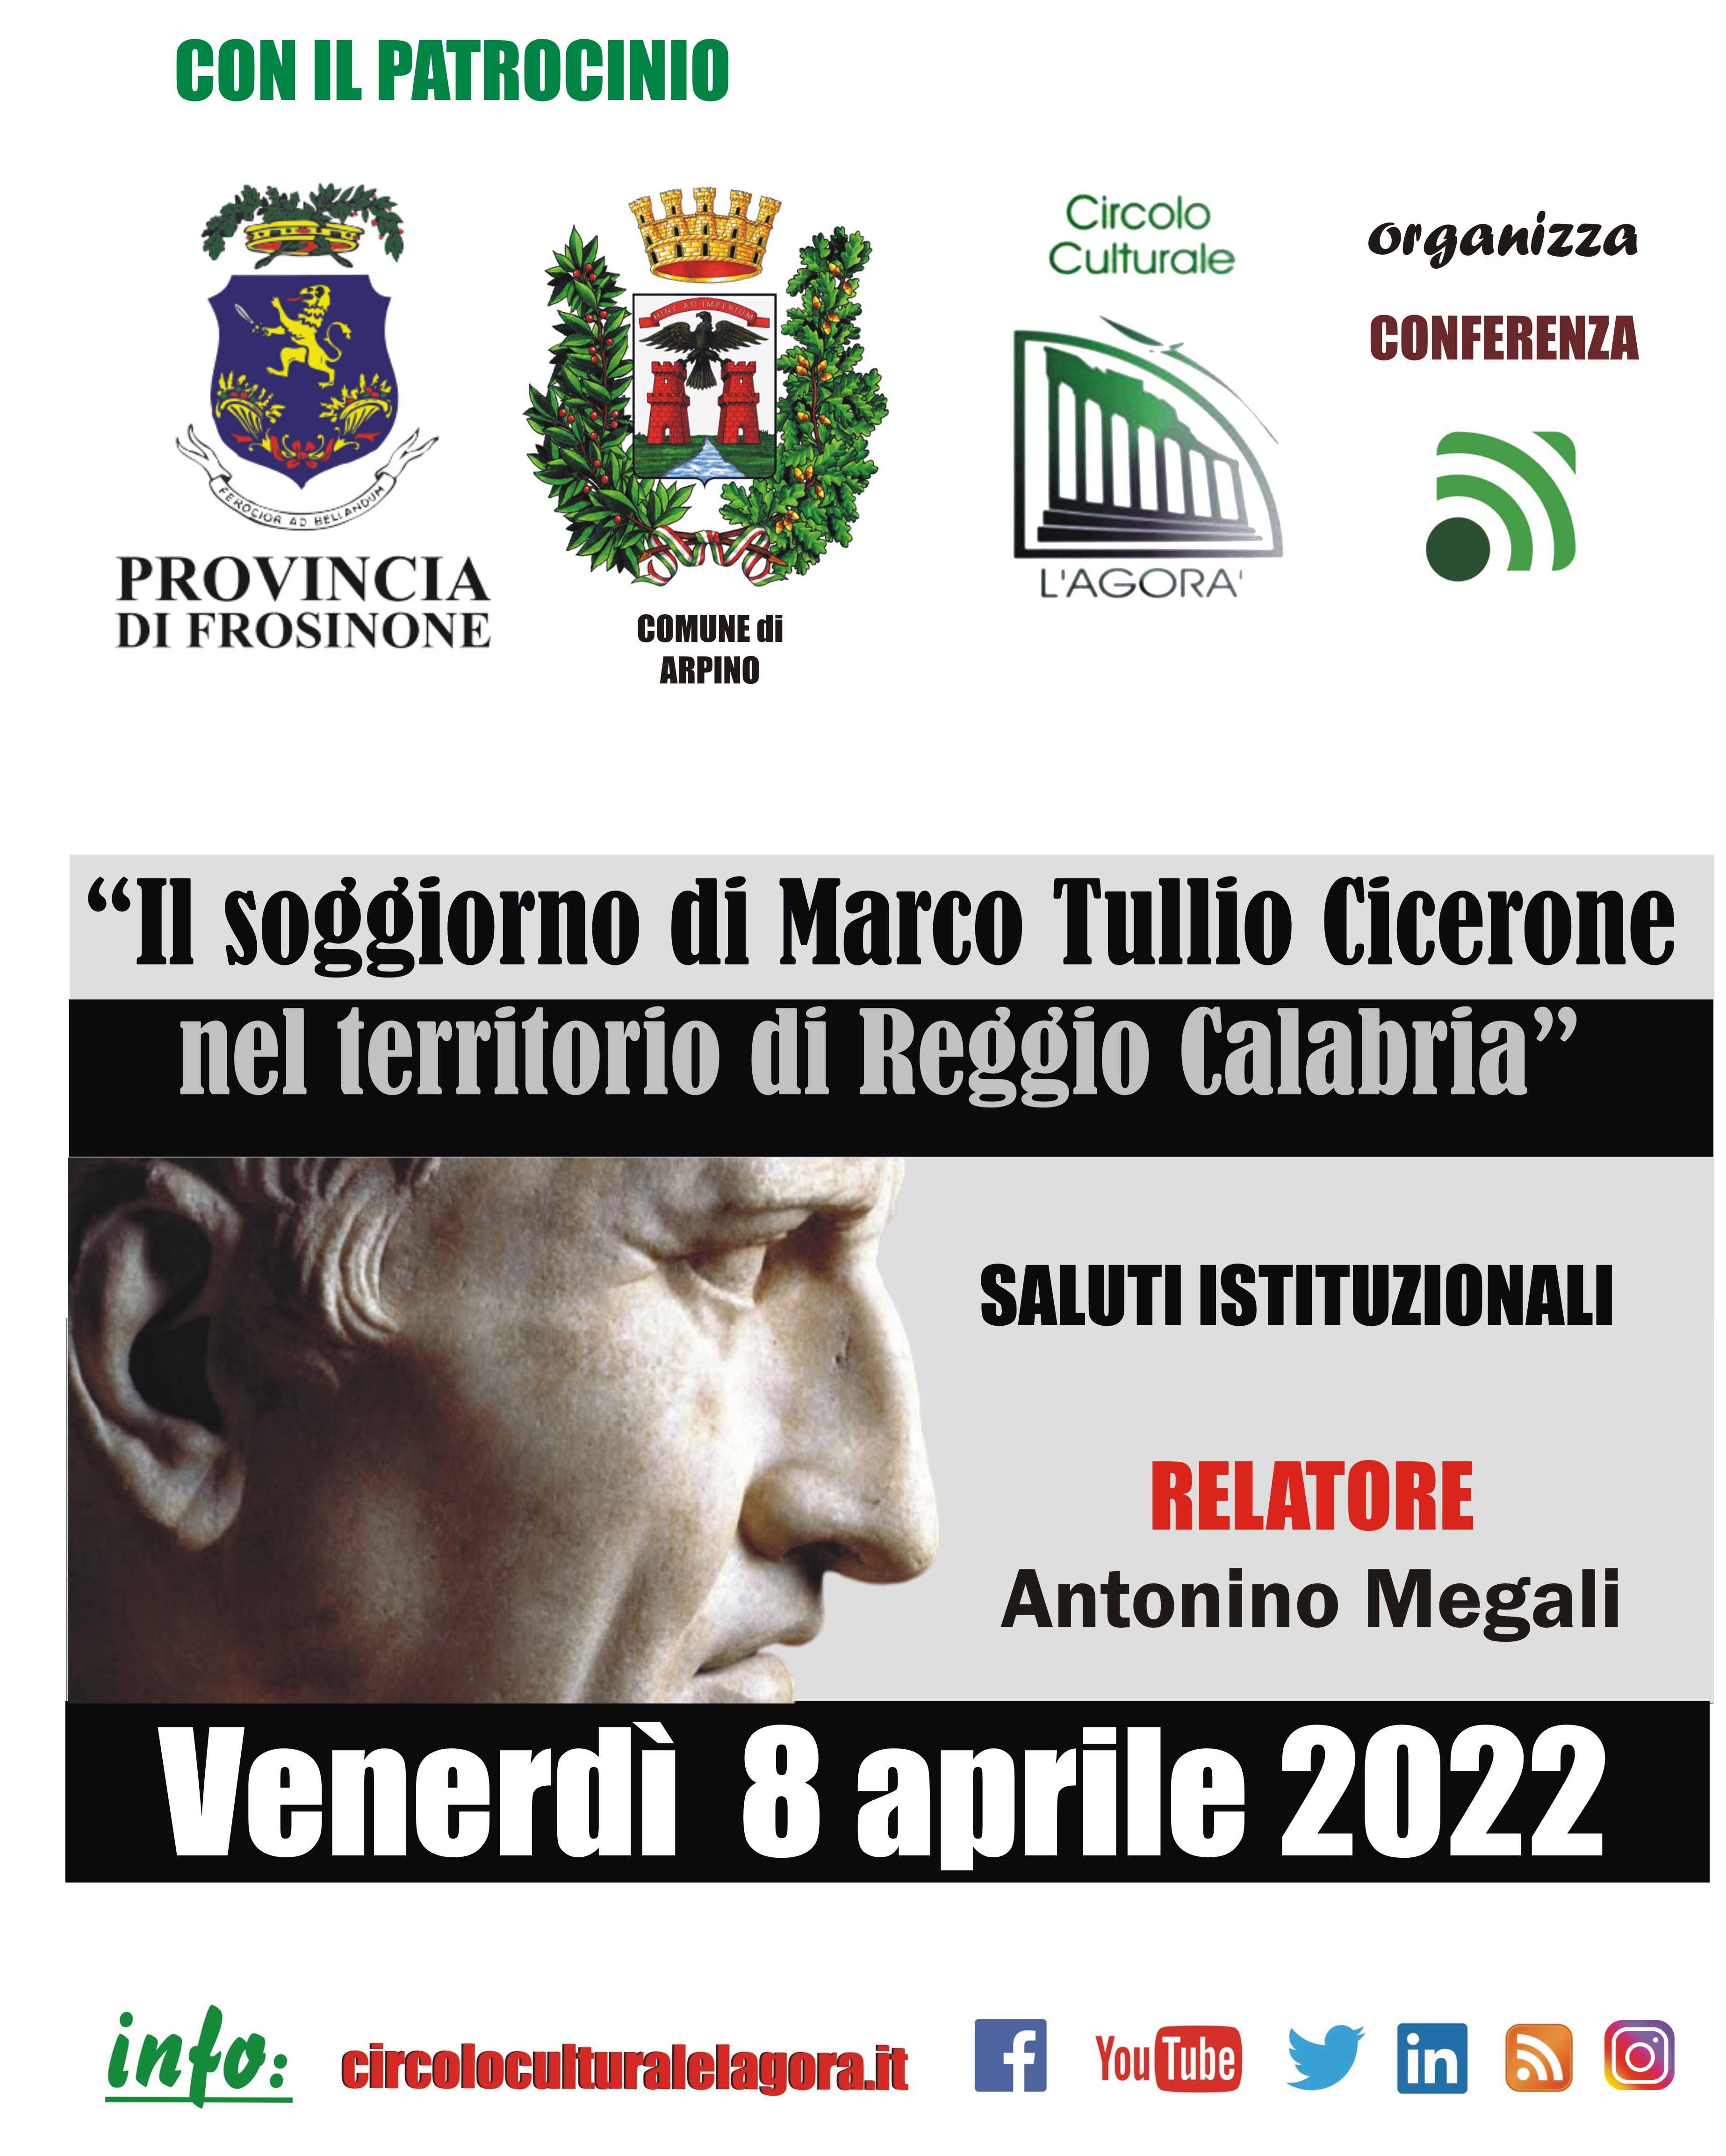 Il Circolo Culturale “L’Agorà” organizza una giornata di studi sul tema “Il soggiorno di Marco Tullio Cicerone nel territorio di Reggio Calabria”.